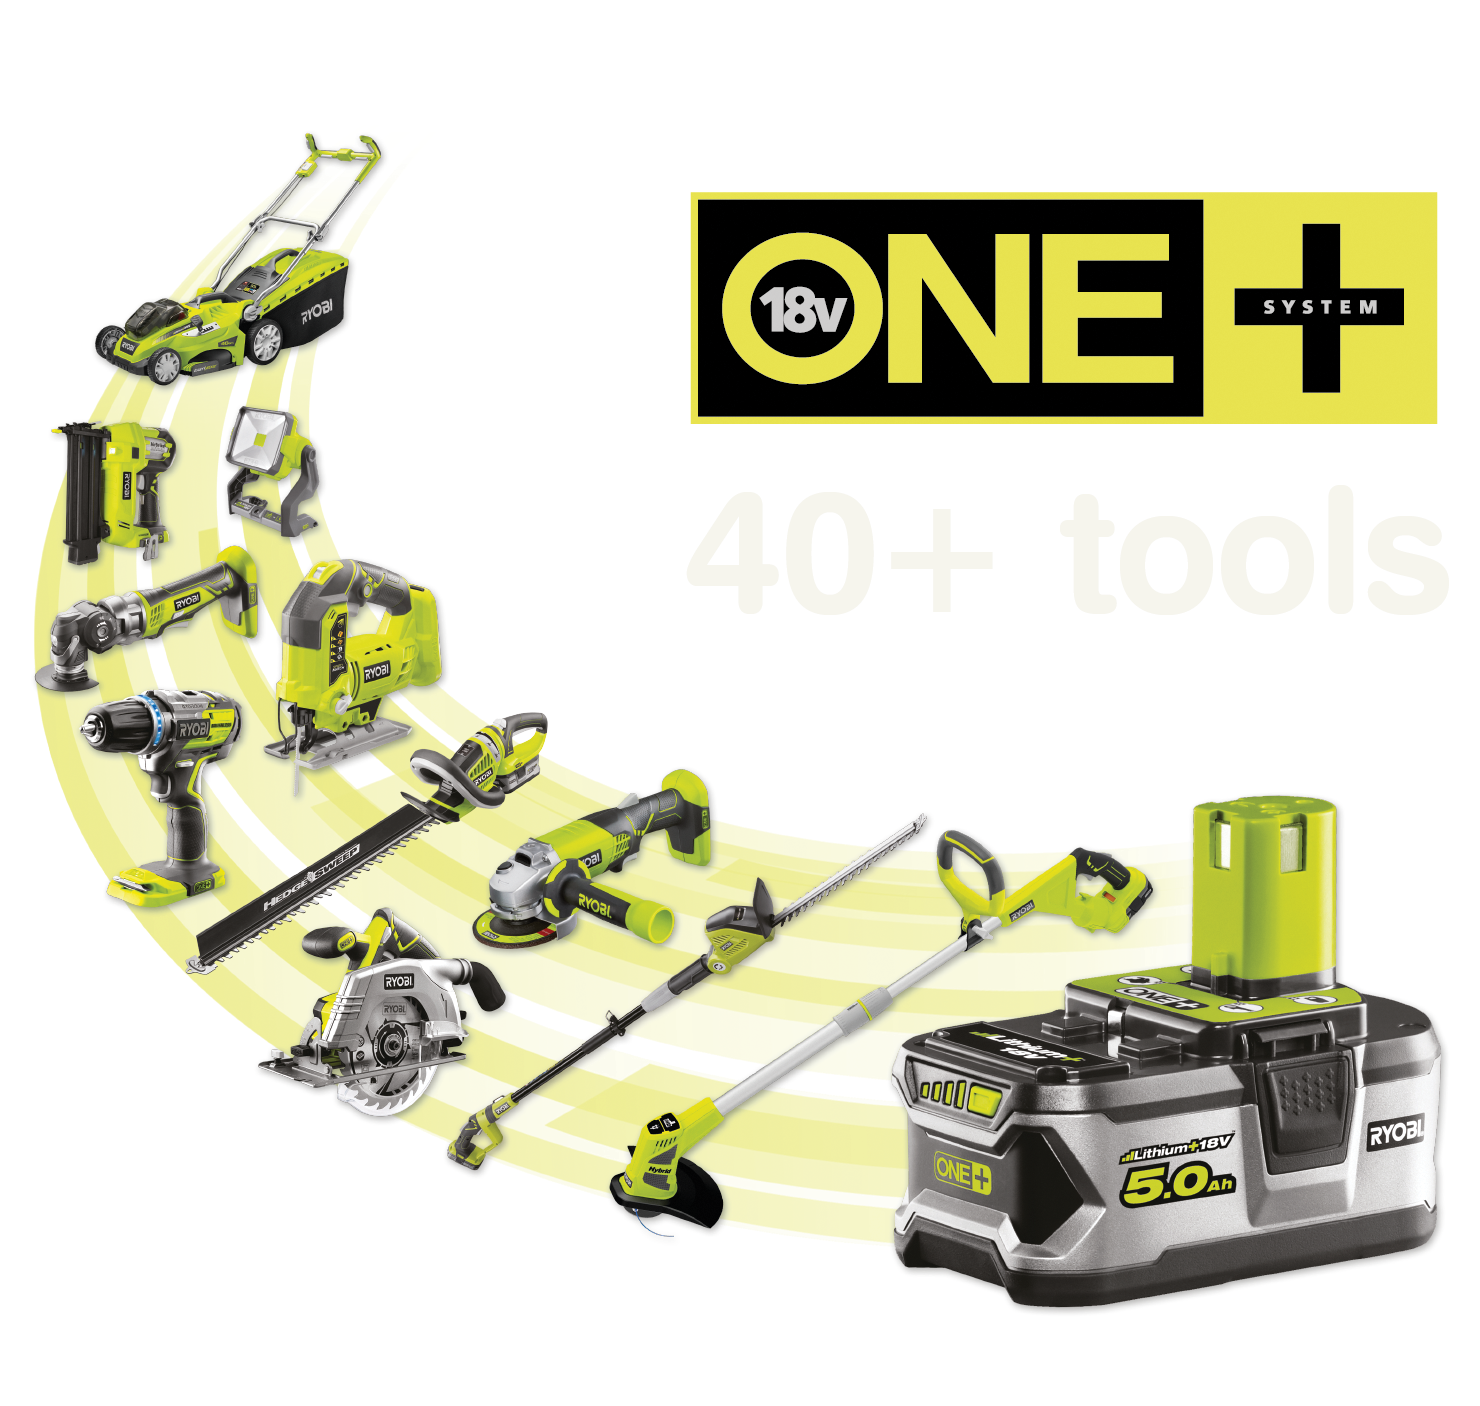 Rohkem kui 40+ tööriista, millele annab toite sama ONE+ aku